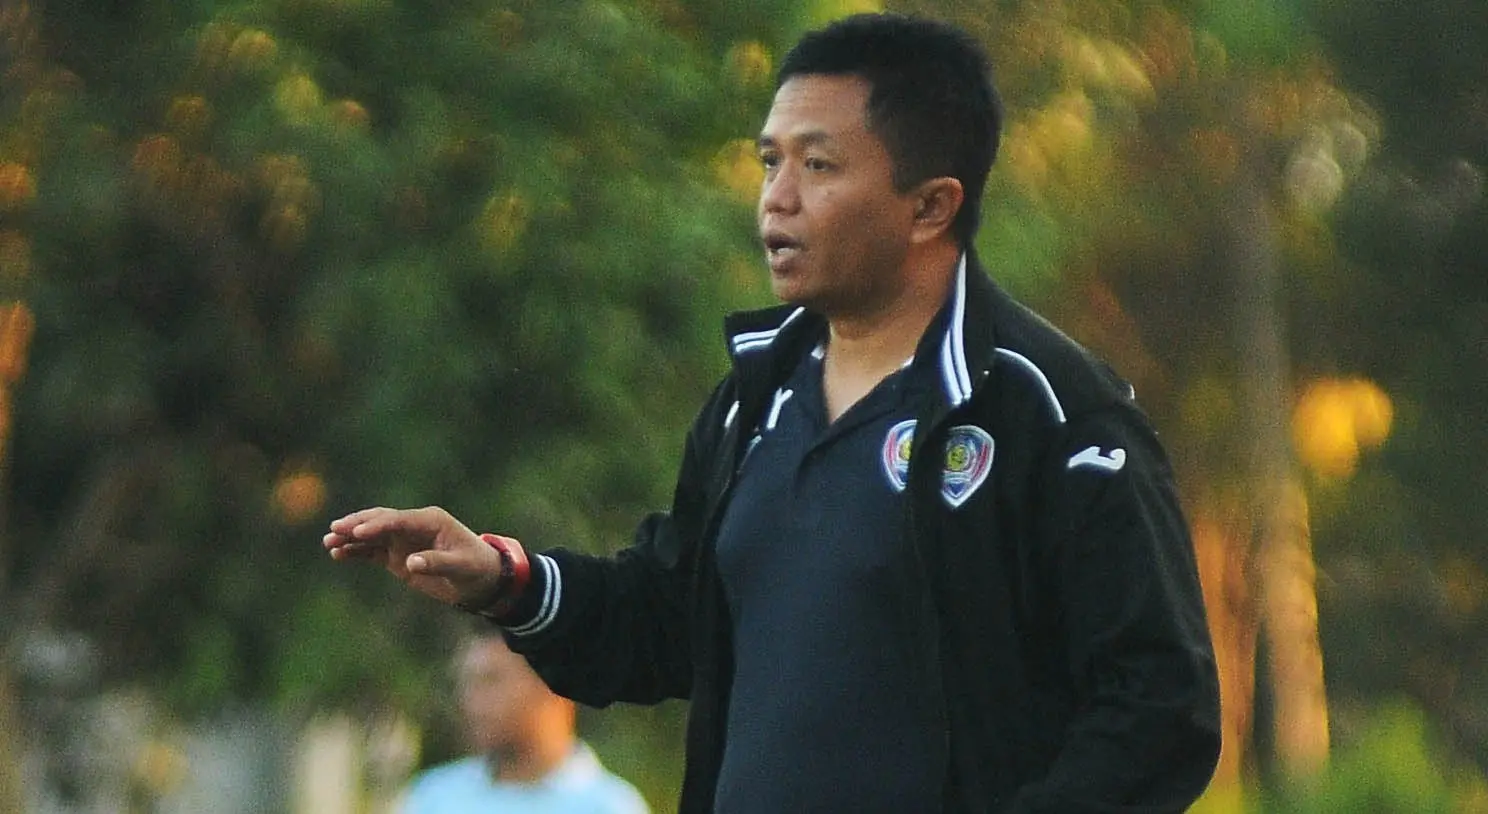 Agus Yuwono kembali menjadi pelatih Perseru Serui, menggantikan Yusack Sutanto. (Bola.com/Iwan Setiawan)